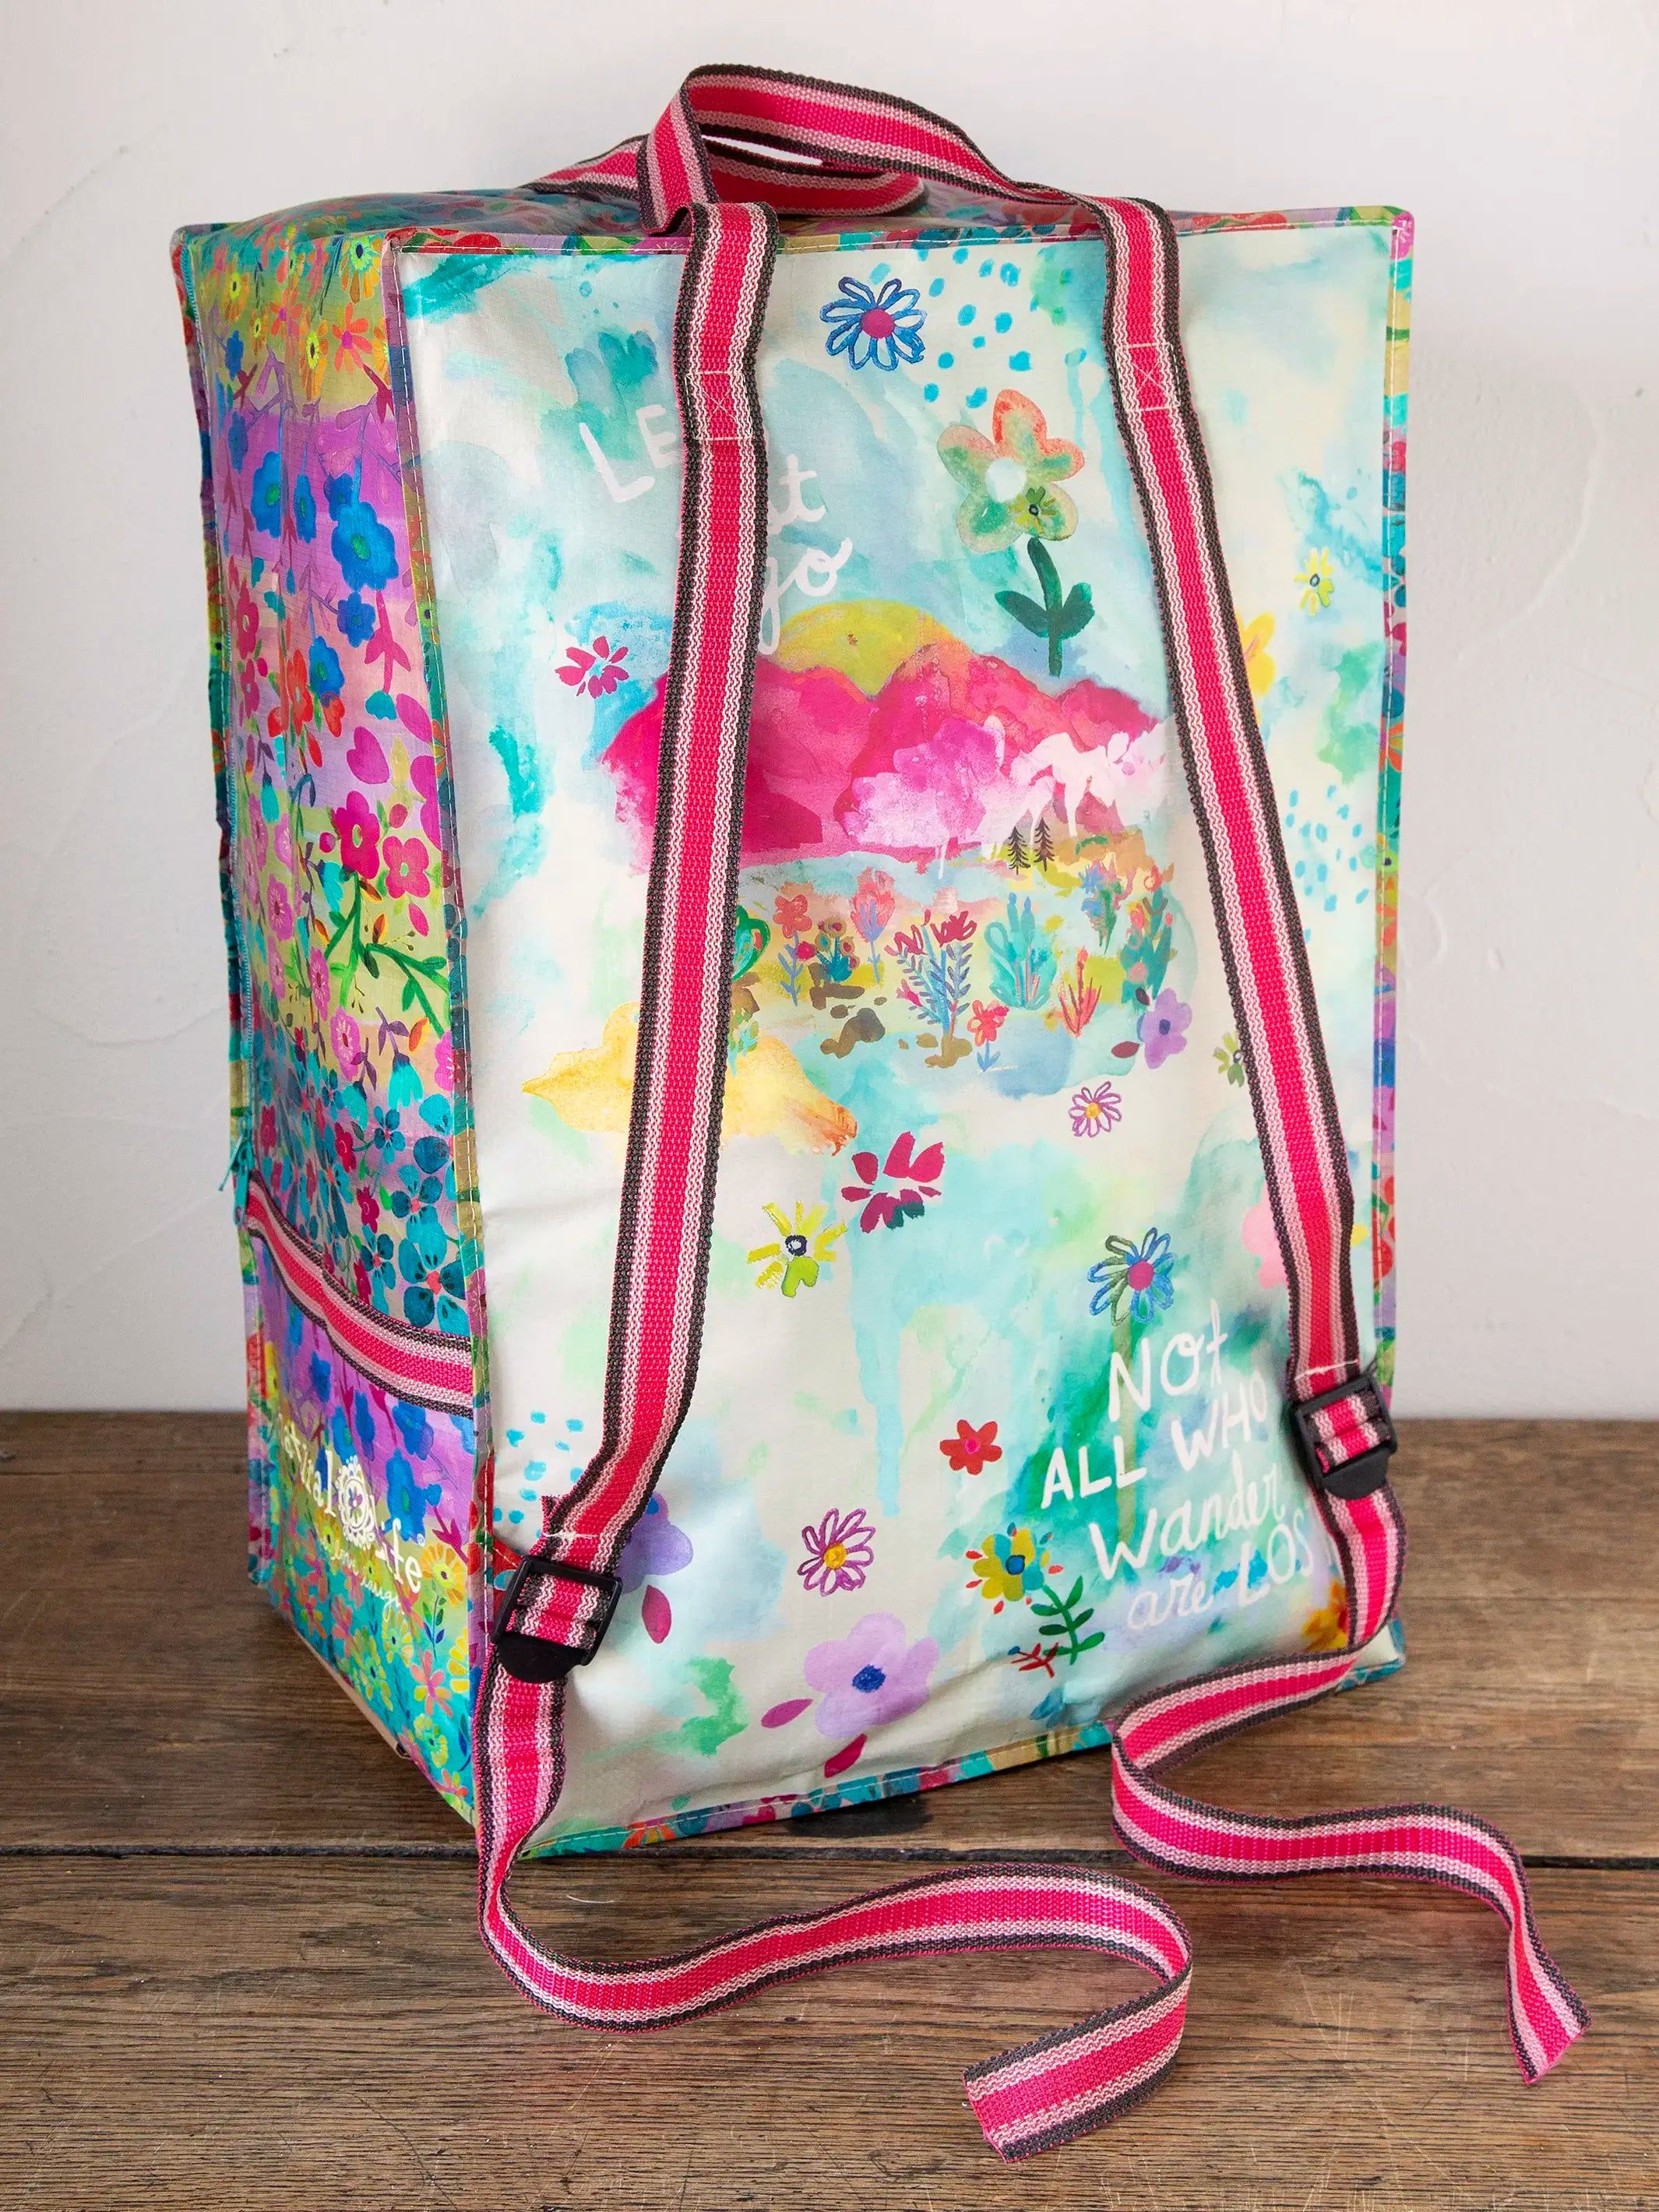 XL Backpack Tote Bag - Washed Black Rose Patchwork | Natural Life